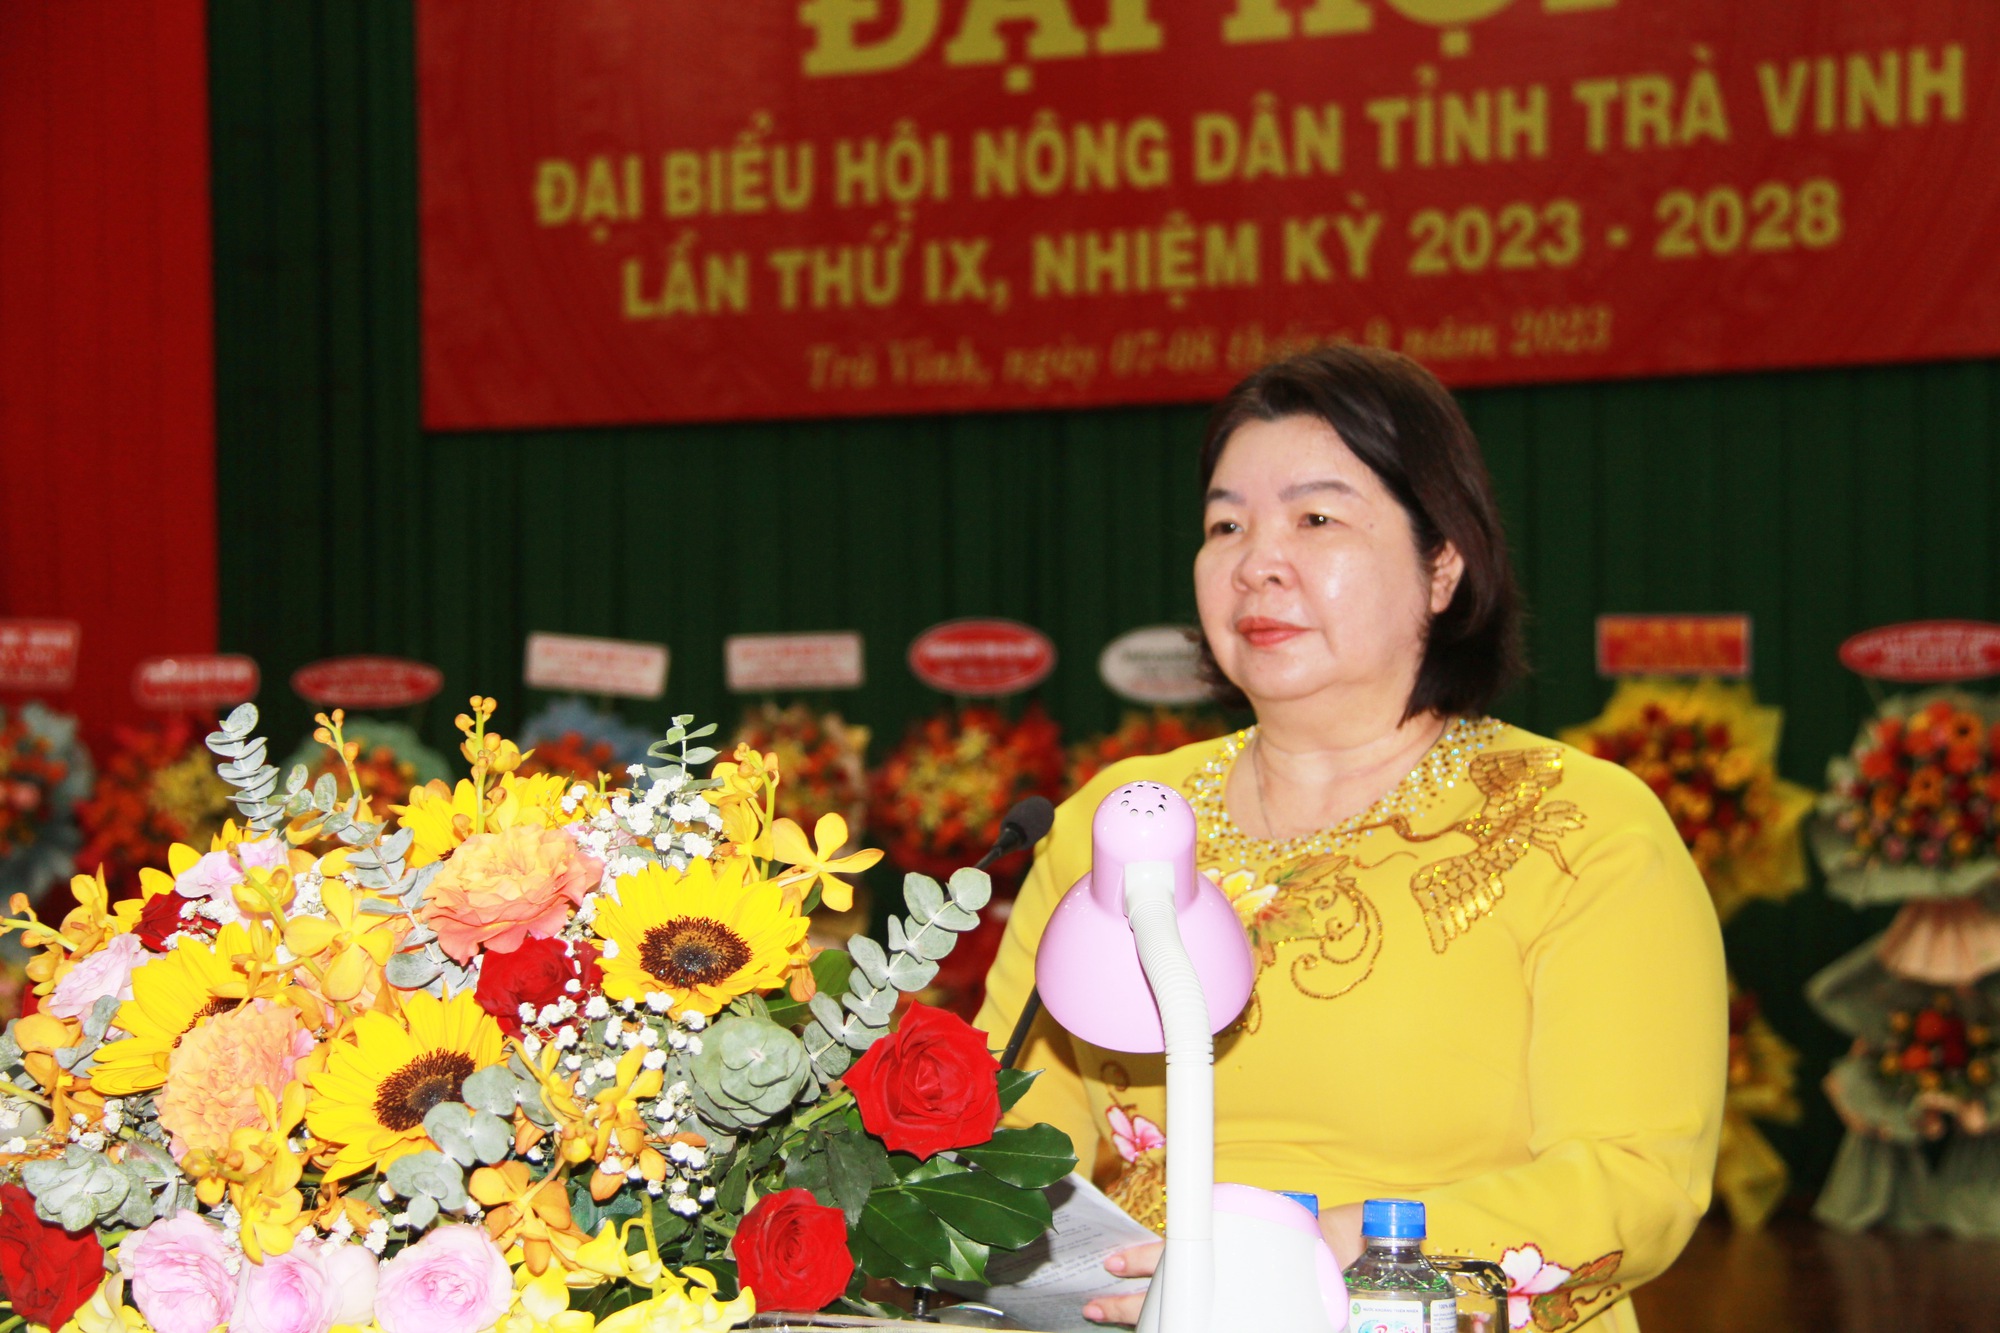 Bí thư Tỉnh ủy Trà Vinh, Phó Chủ tịch TƯ Hội NDVN dự, chỉ đạo Đại hội Hội Nông dân tỉnh Trà Vinh - Ảnh 5.